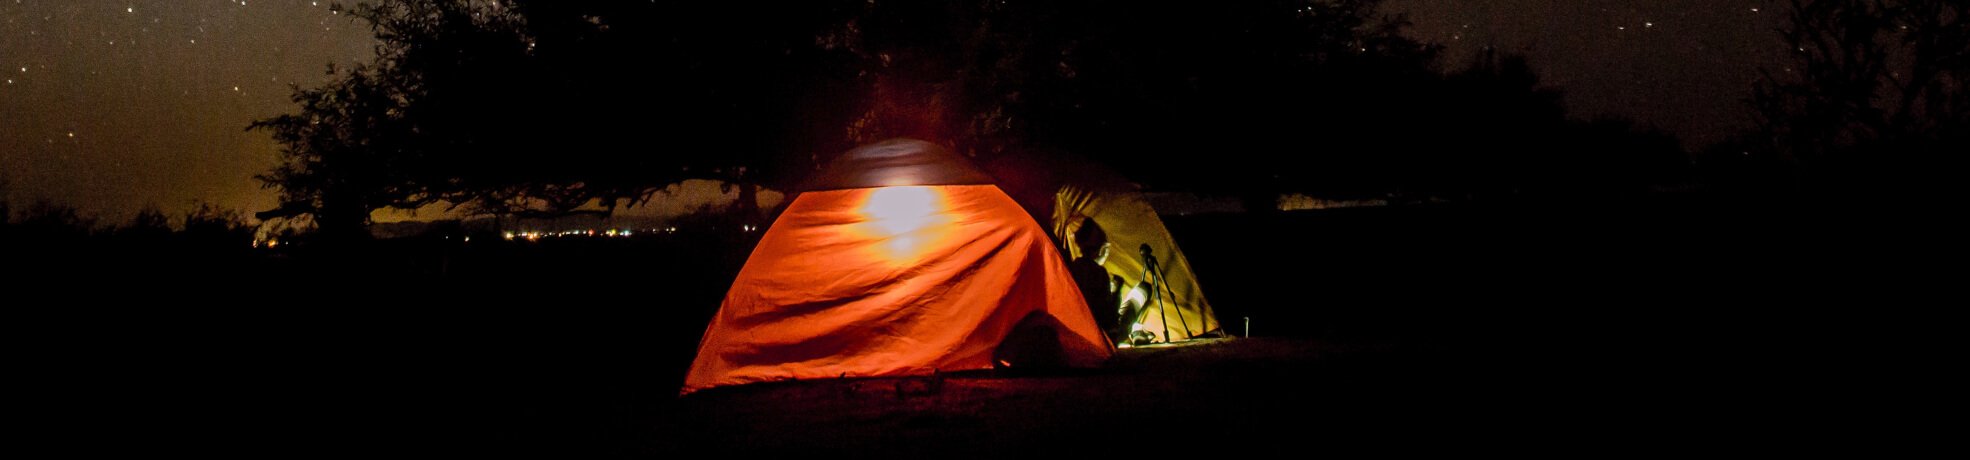 Camping Lanterns, Torches, & Lighting